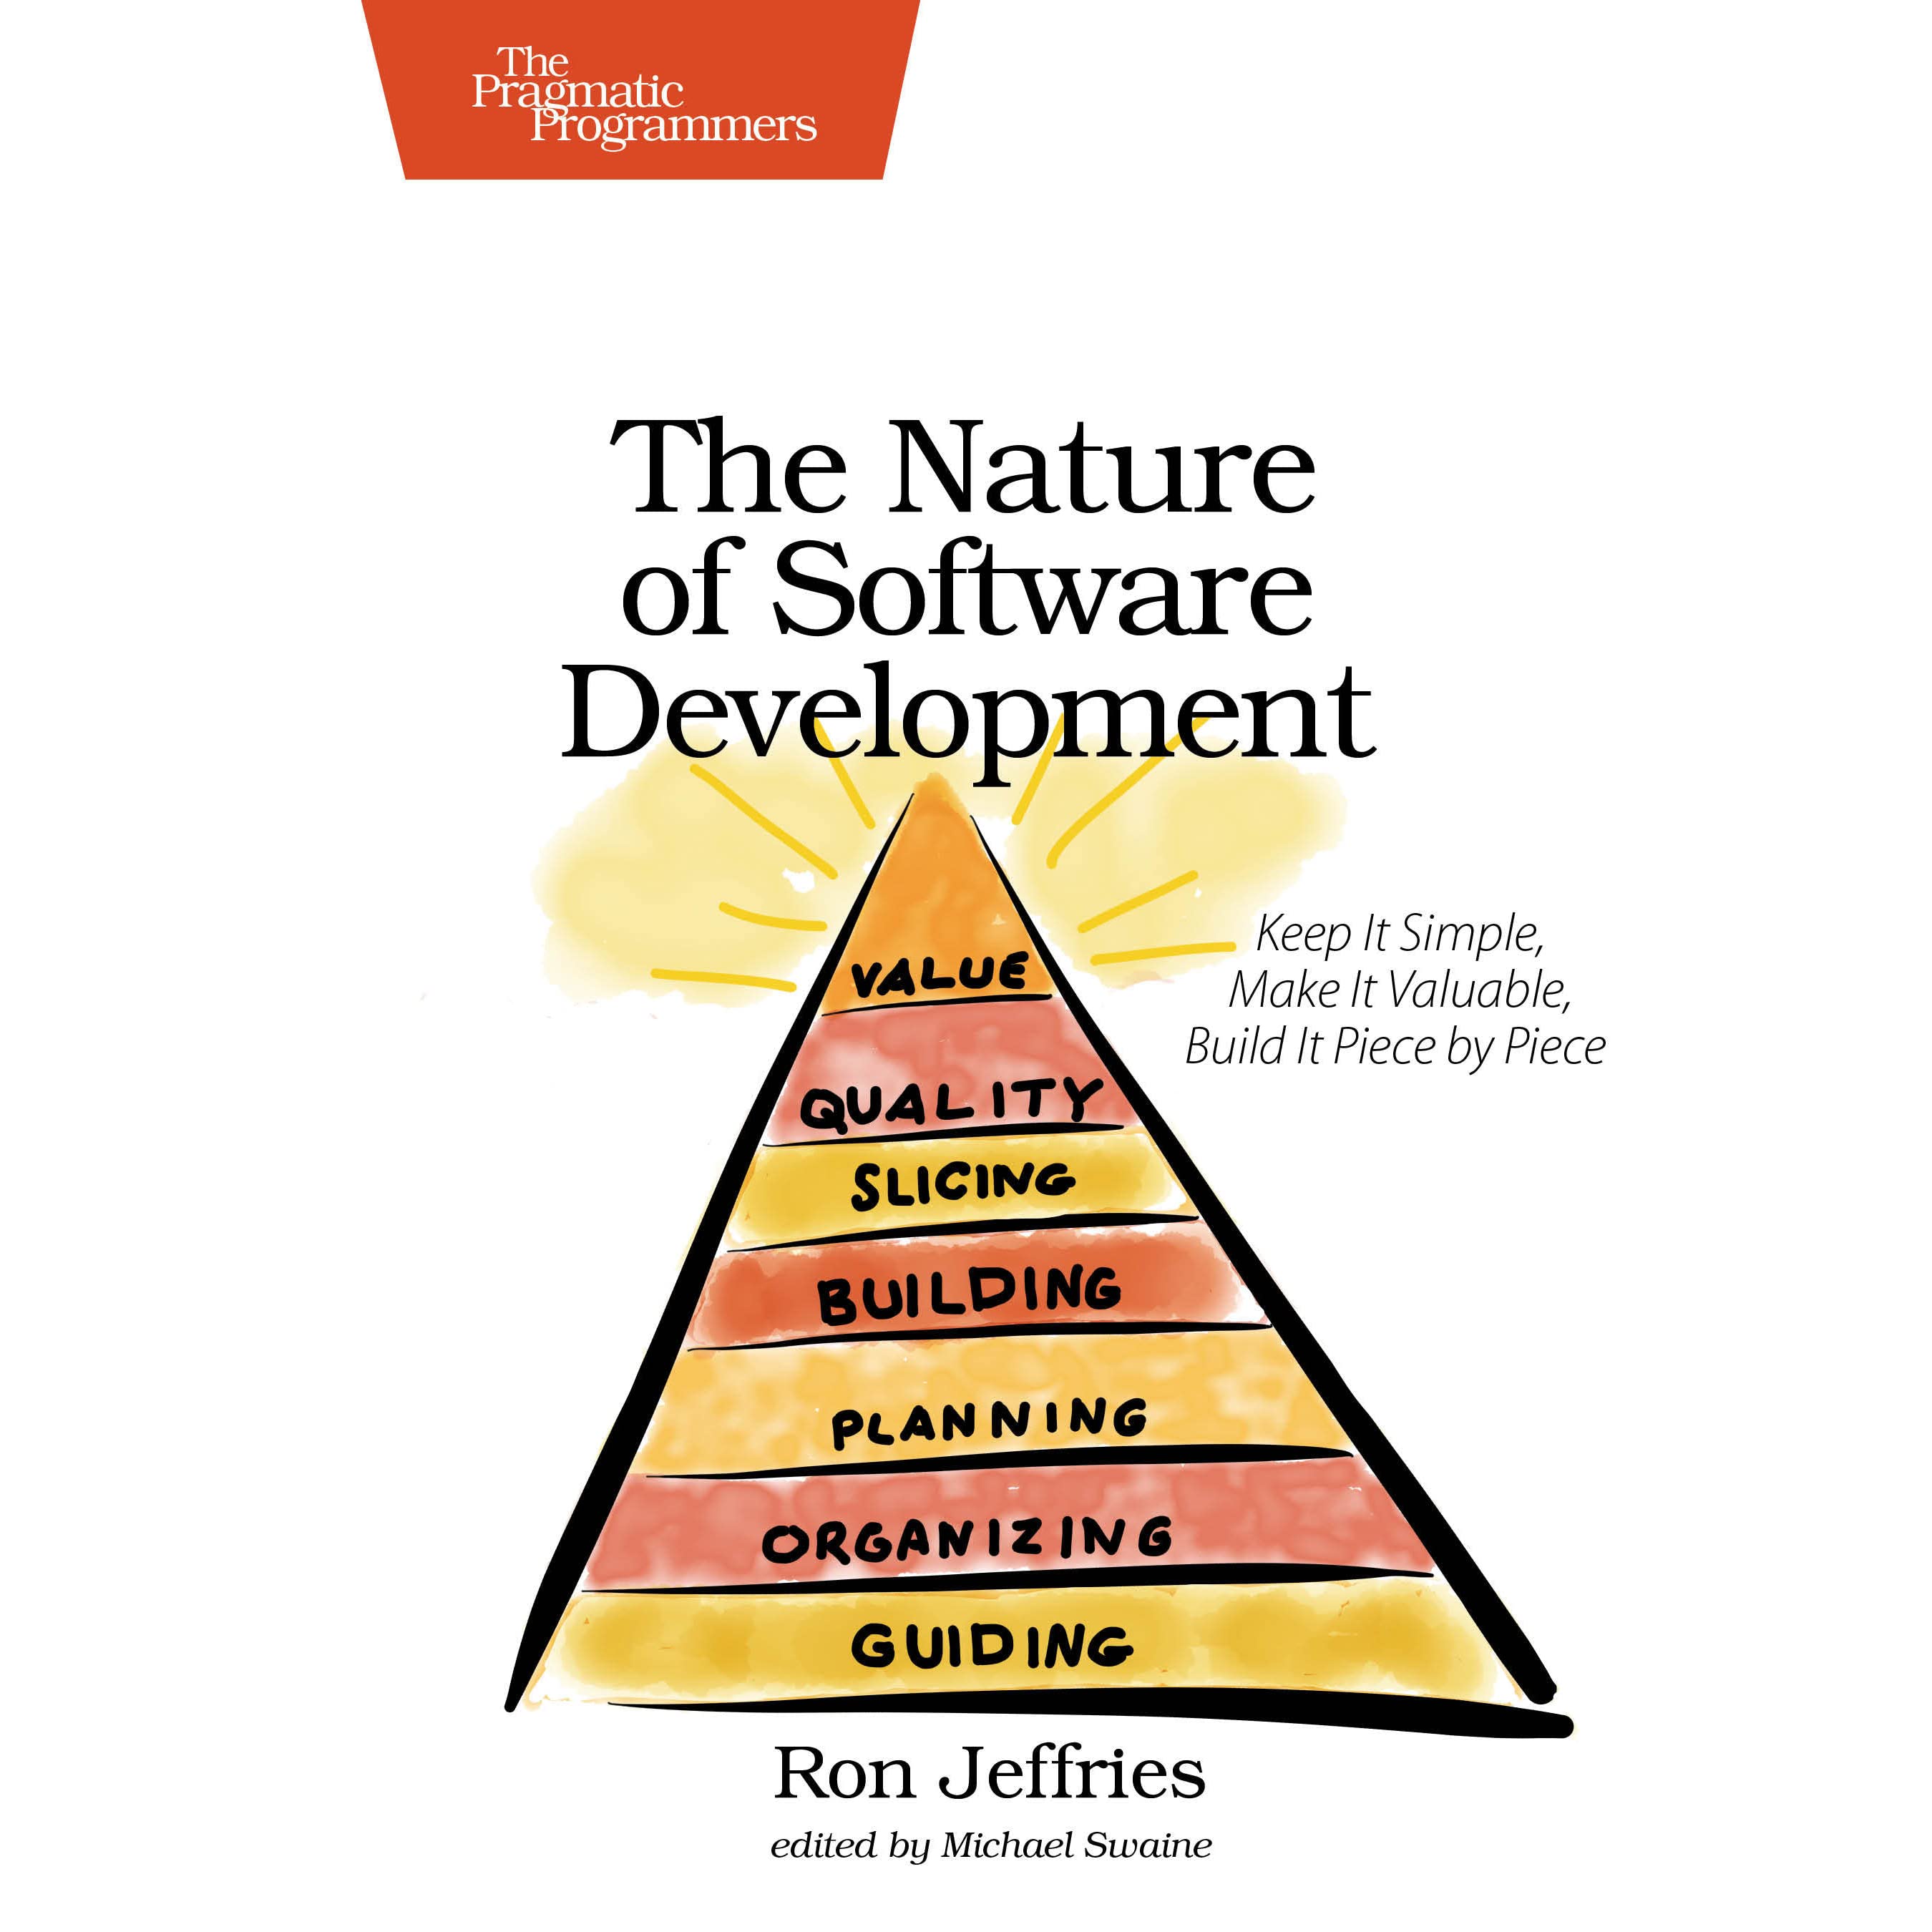 Ron Jeffries: The Nature of Software Development (2015, Pragmatic Bookshelf)